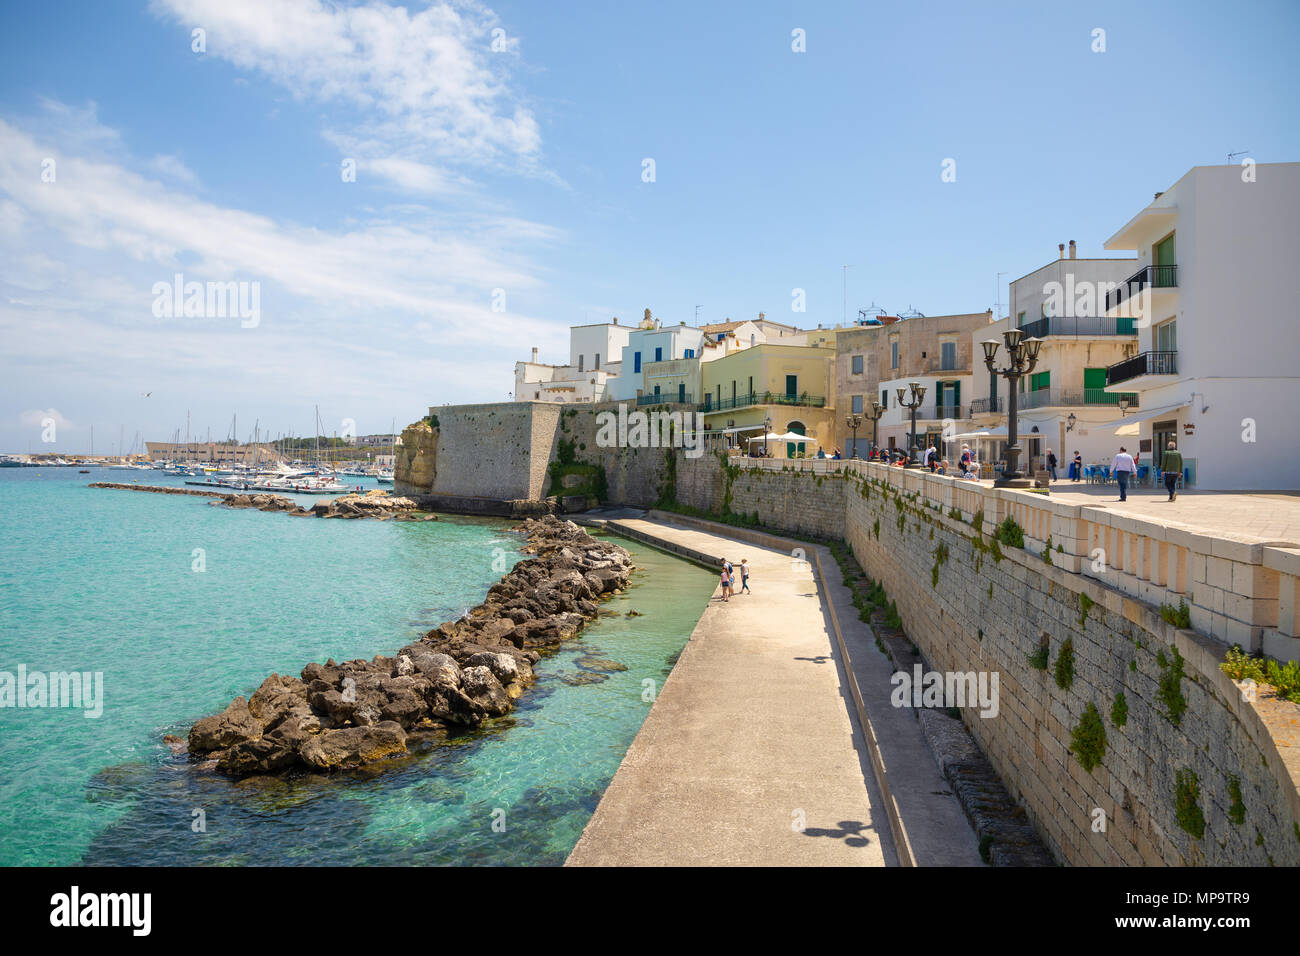 Otranto, Italy - 6.05.2018: View of small town Otranto, province of Lecce in the Salento peninsula, Puglia, Italy Stock Photo